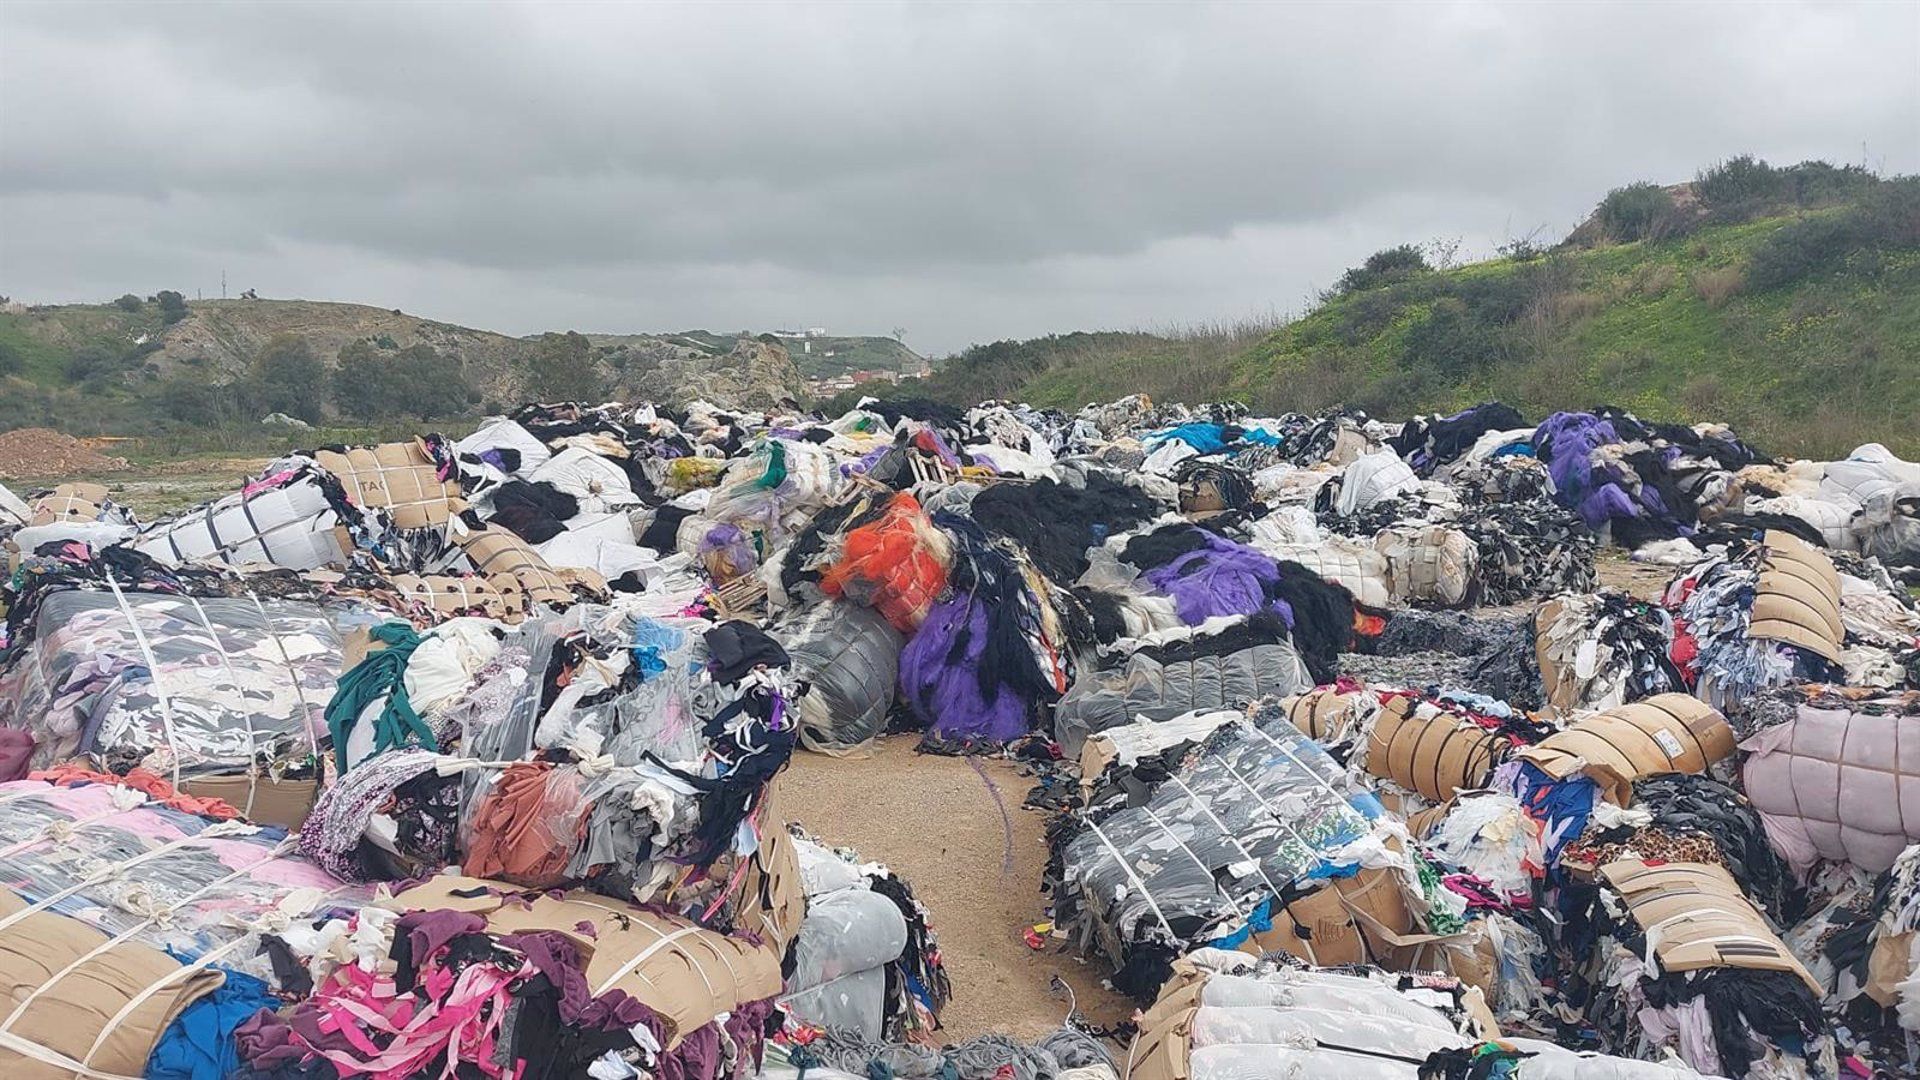 Vertedero ilegal de desechos textiles localizado en parcelas del polígono industrial de Cortijo Real, en Algeciras (Cádiz) - ZONA FRANCA DE CÁDIZ.